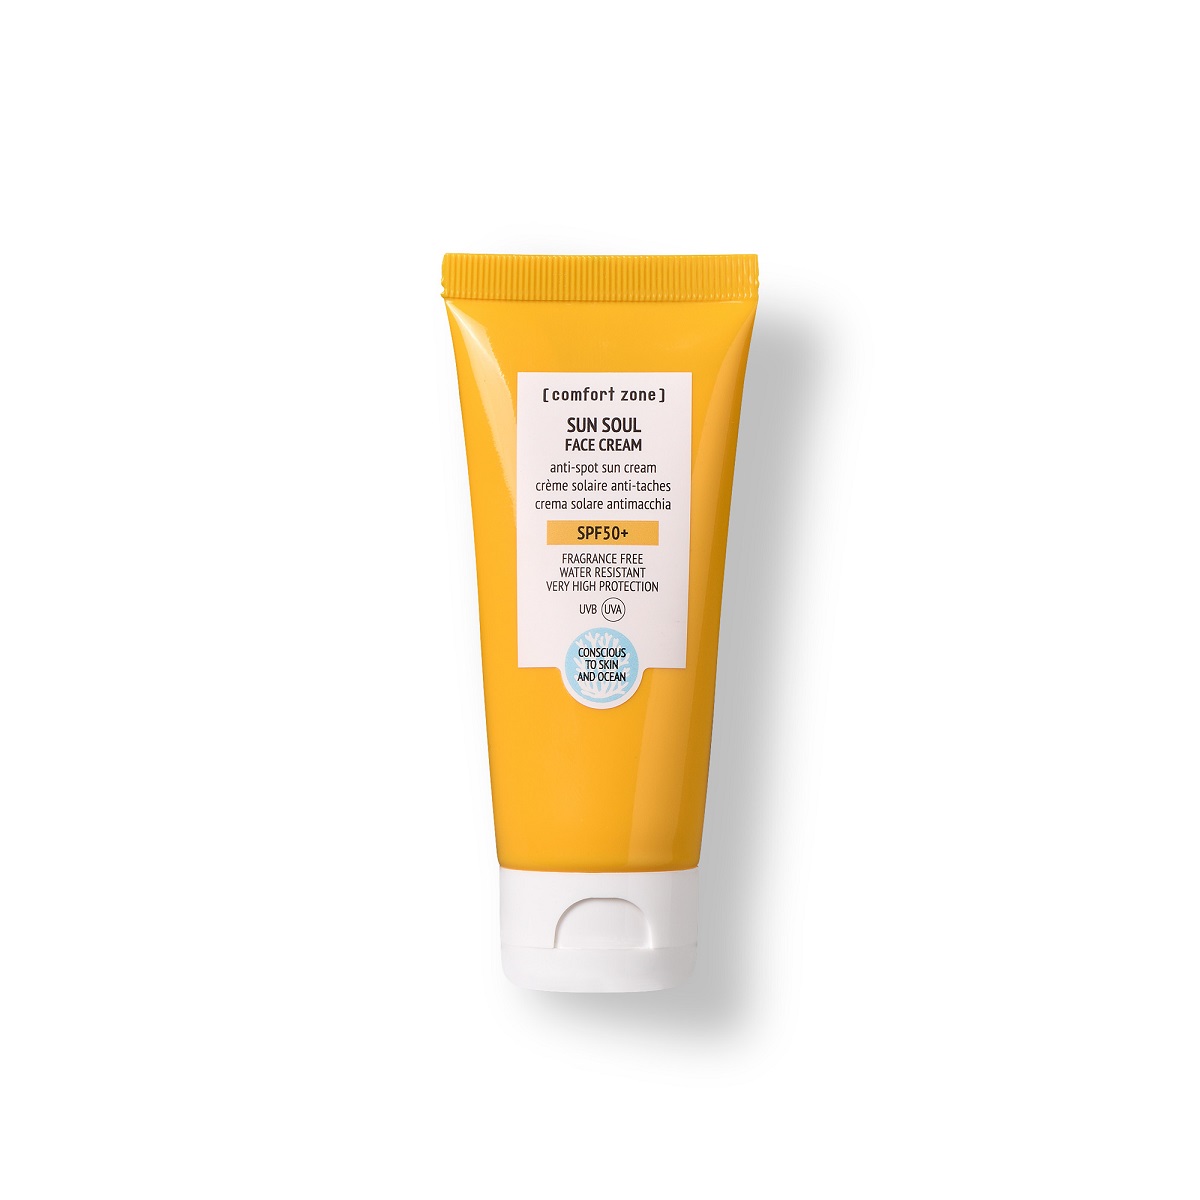 Zonnecrème tegen Pigmentvlekken voor gezicht en lichaam SPF50 uit de Sun Soul Lijn van Comfort Zone - Inhoud Verpakking, tube 60ml